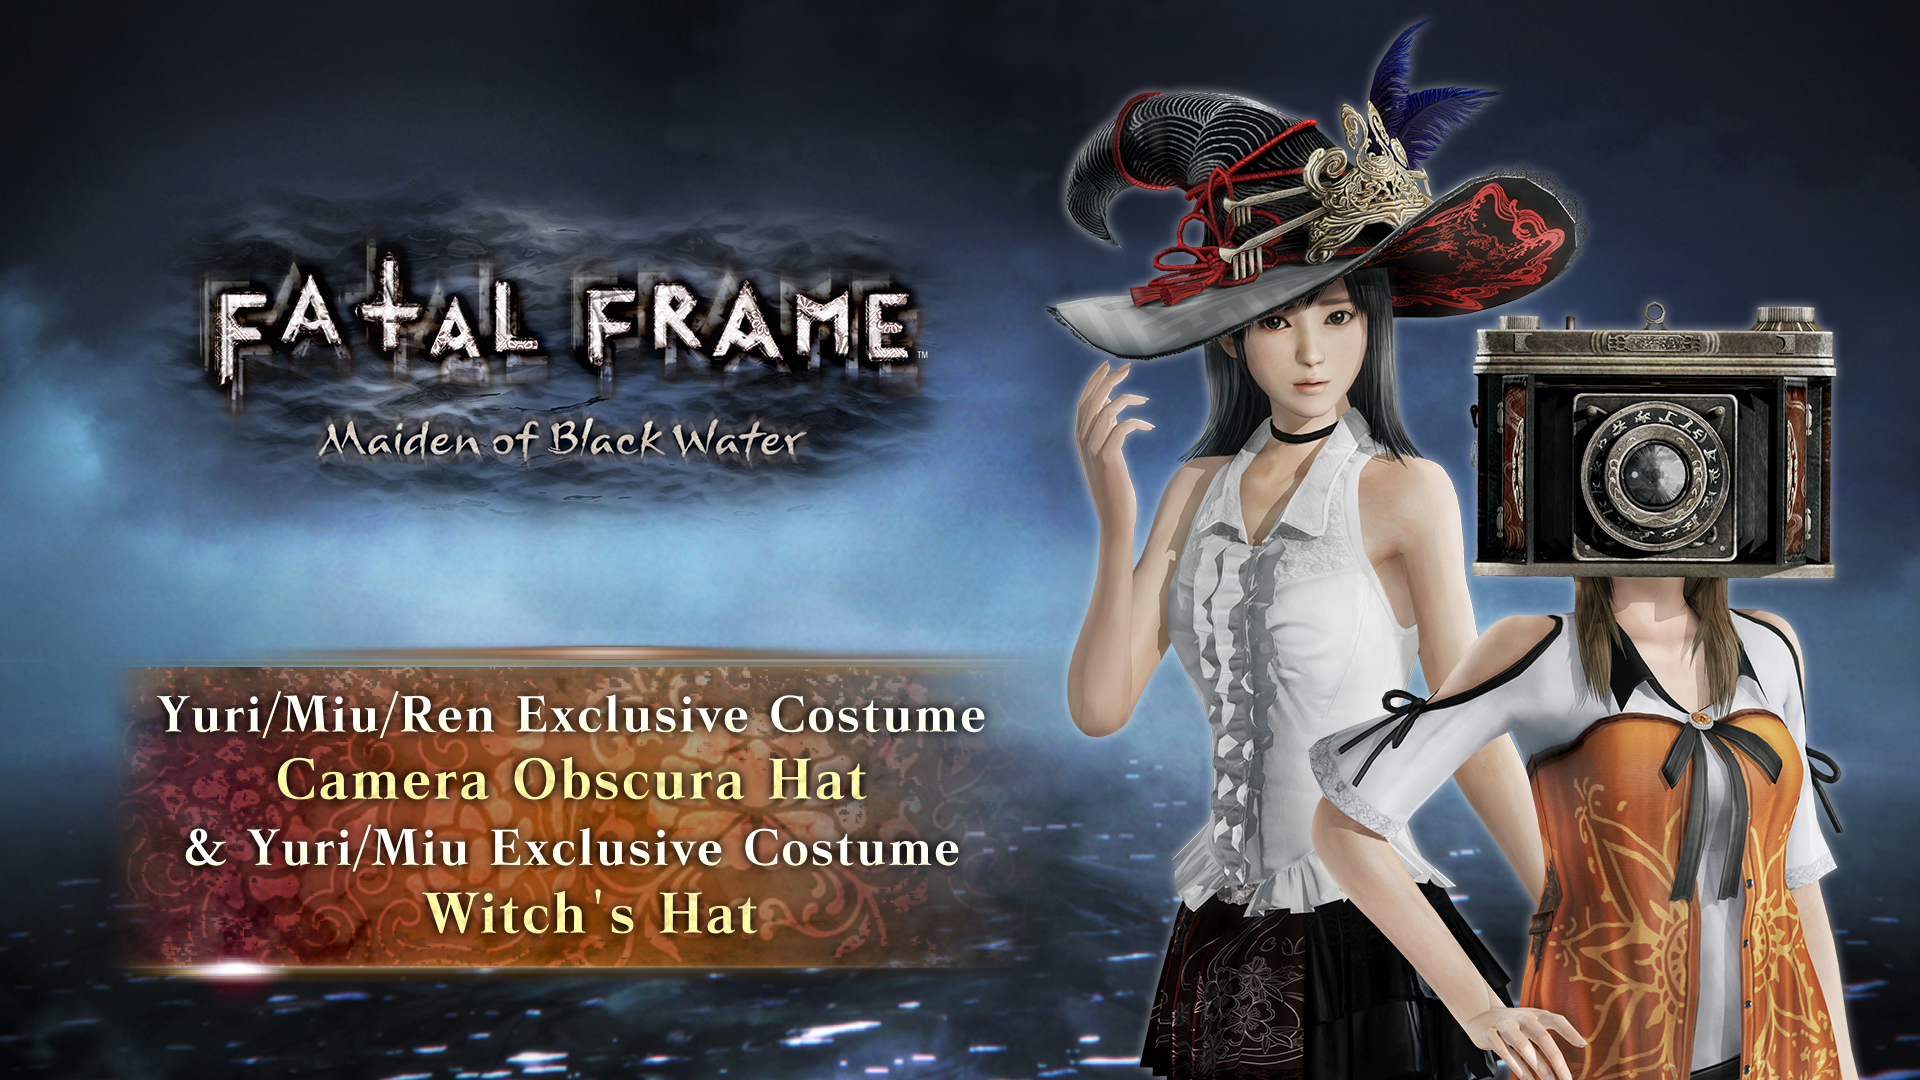 Yuri/Miu/Ren Exclusive Costume: Camera Obscura Hat & Yuri/Miu Exclusive Costume:  Witch's Hat